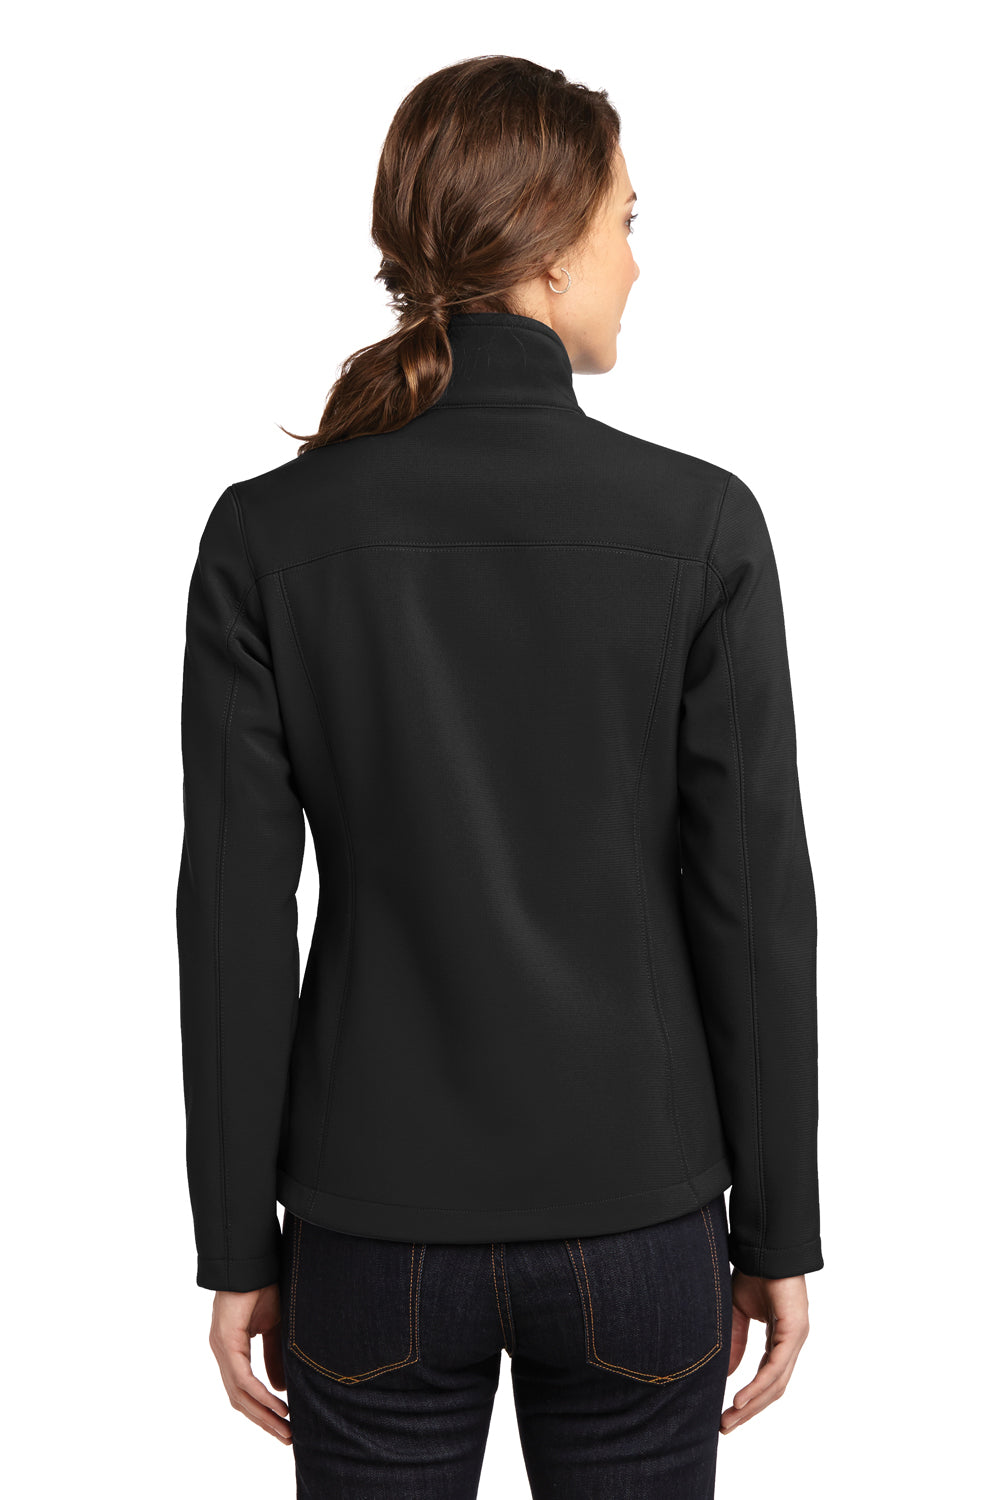 Eddie Bauer EB535 Womens Rugged Water Resistant Full Zip Jacket Black Model Back